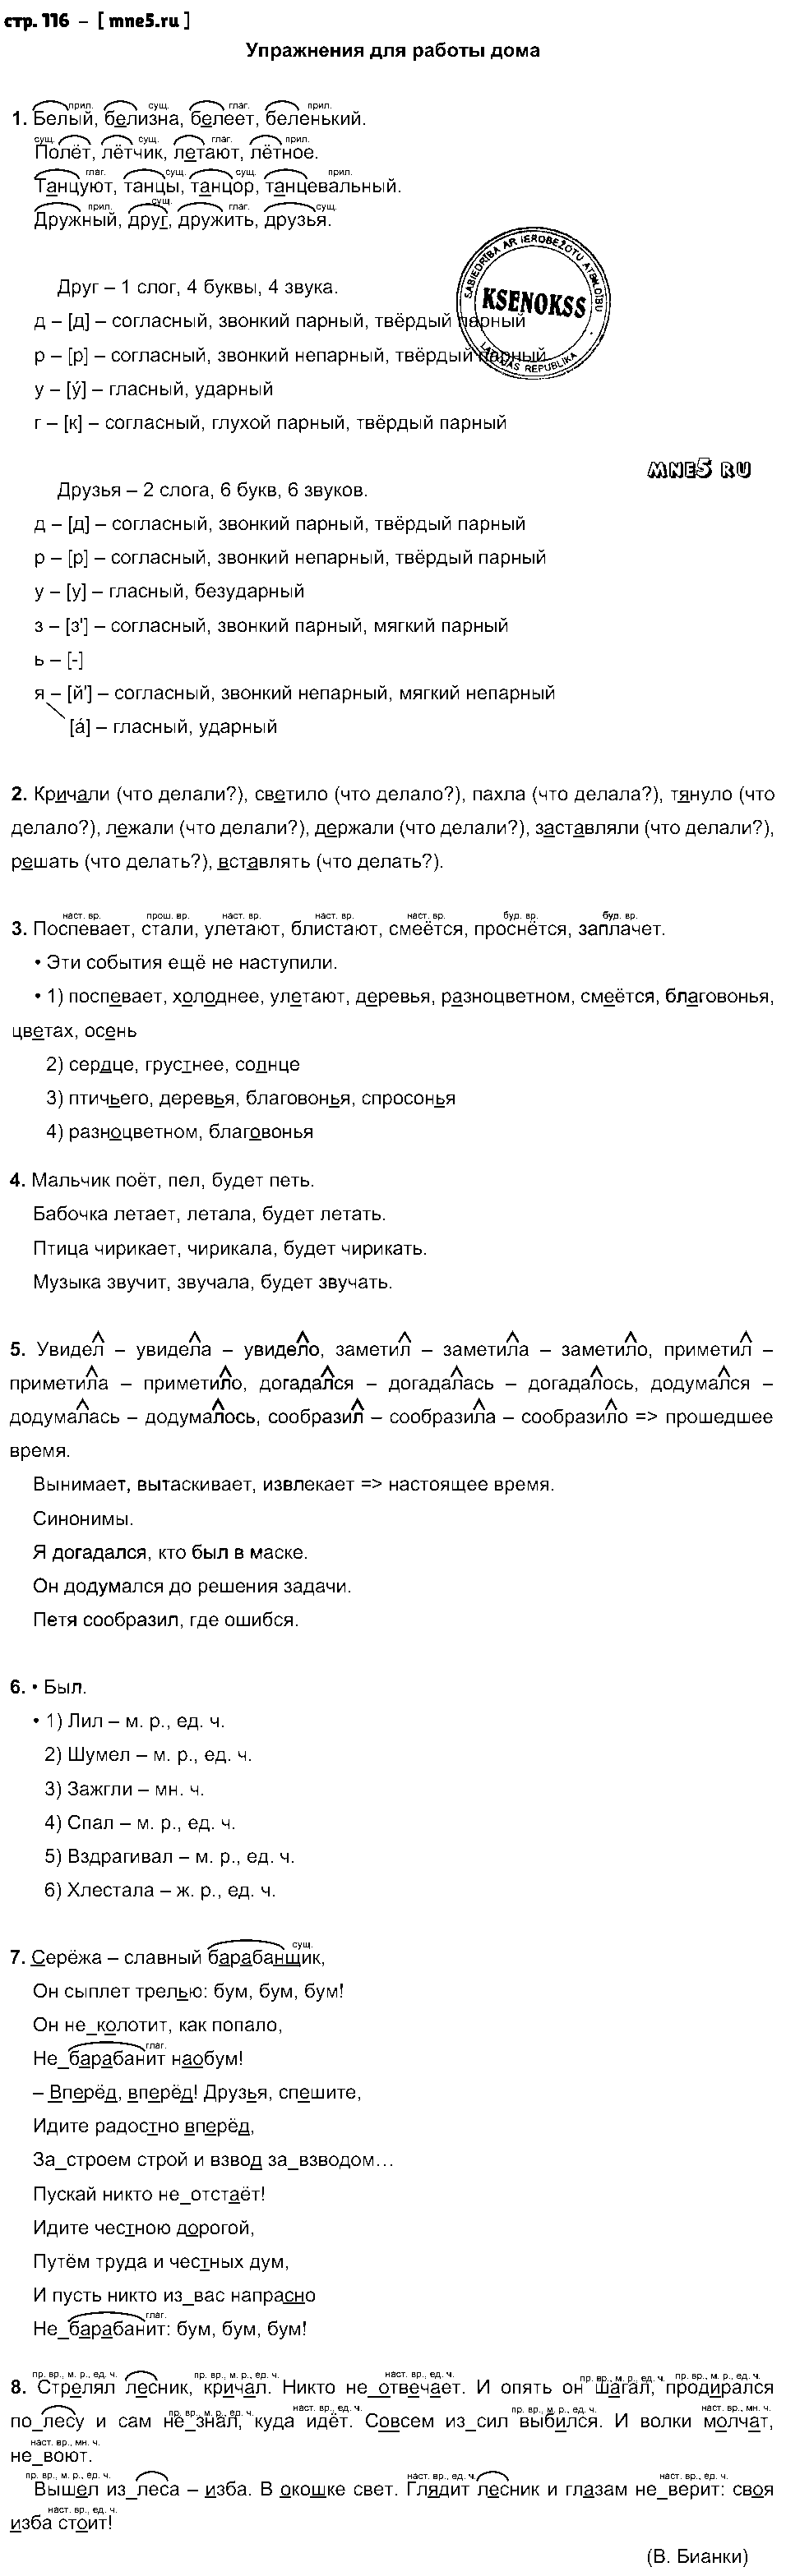 ГДЗ Русский язык 3 класс - стр. 116